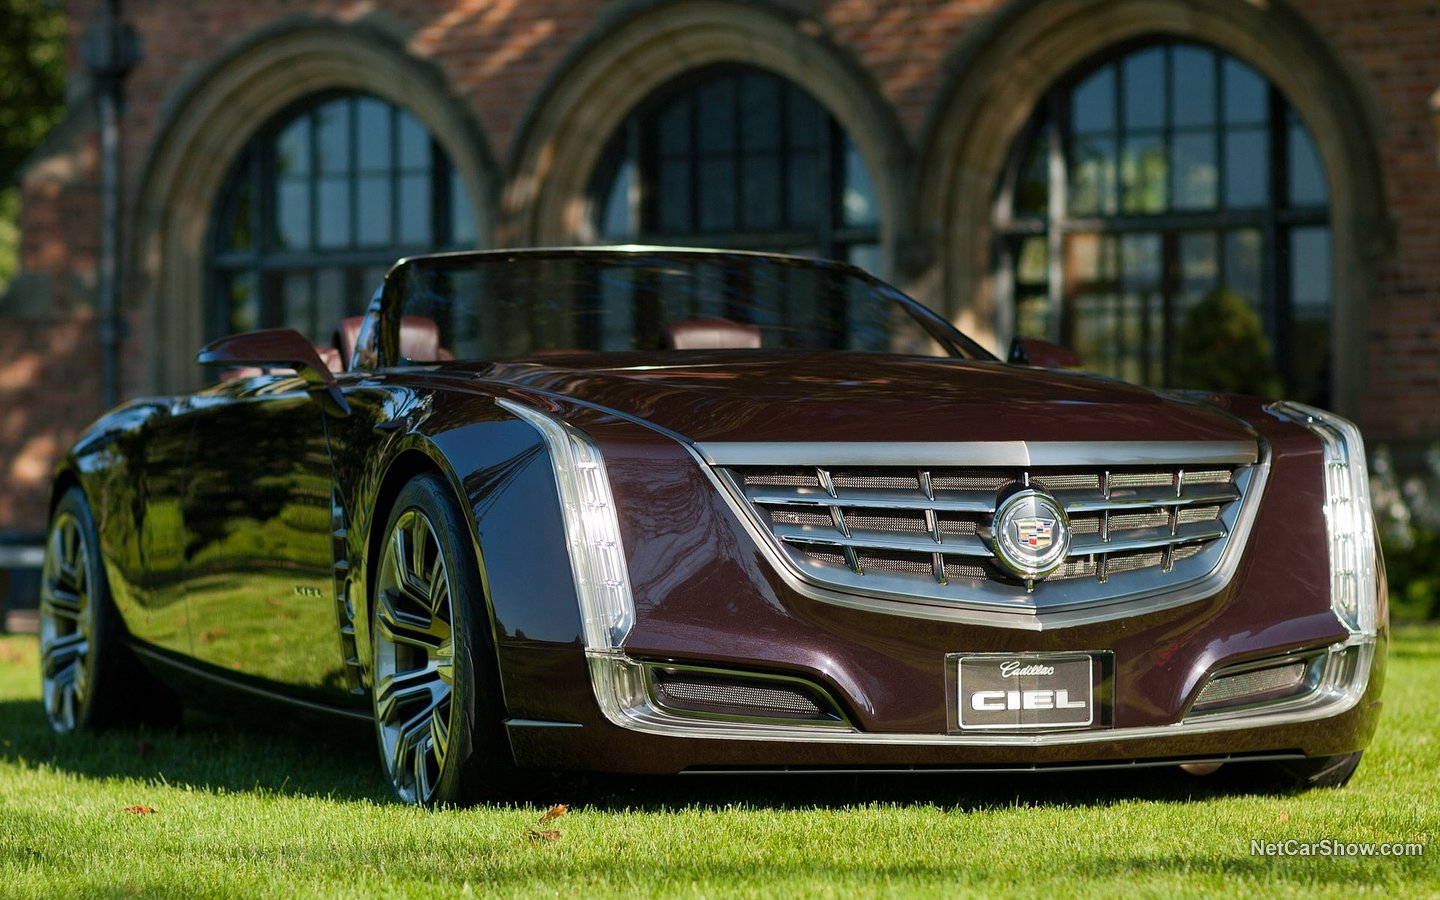 Cadillac Ciel Concept 2011 8c9f528a